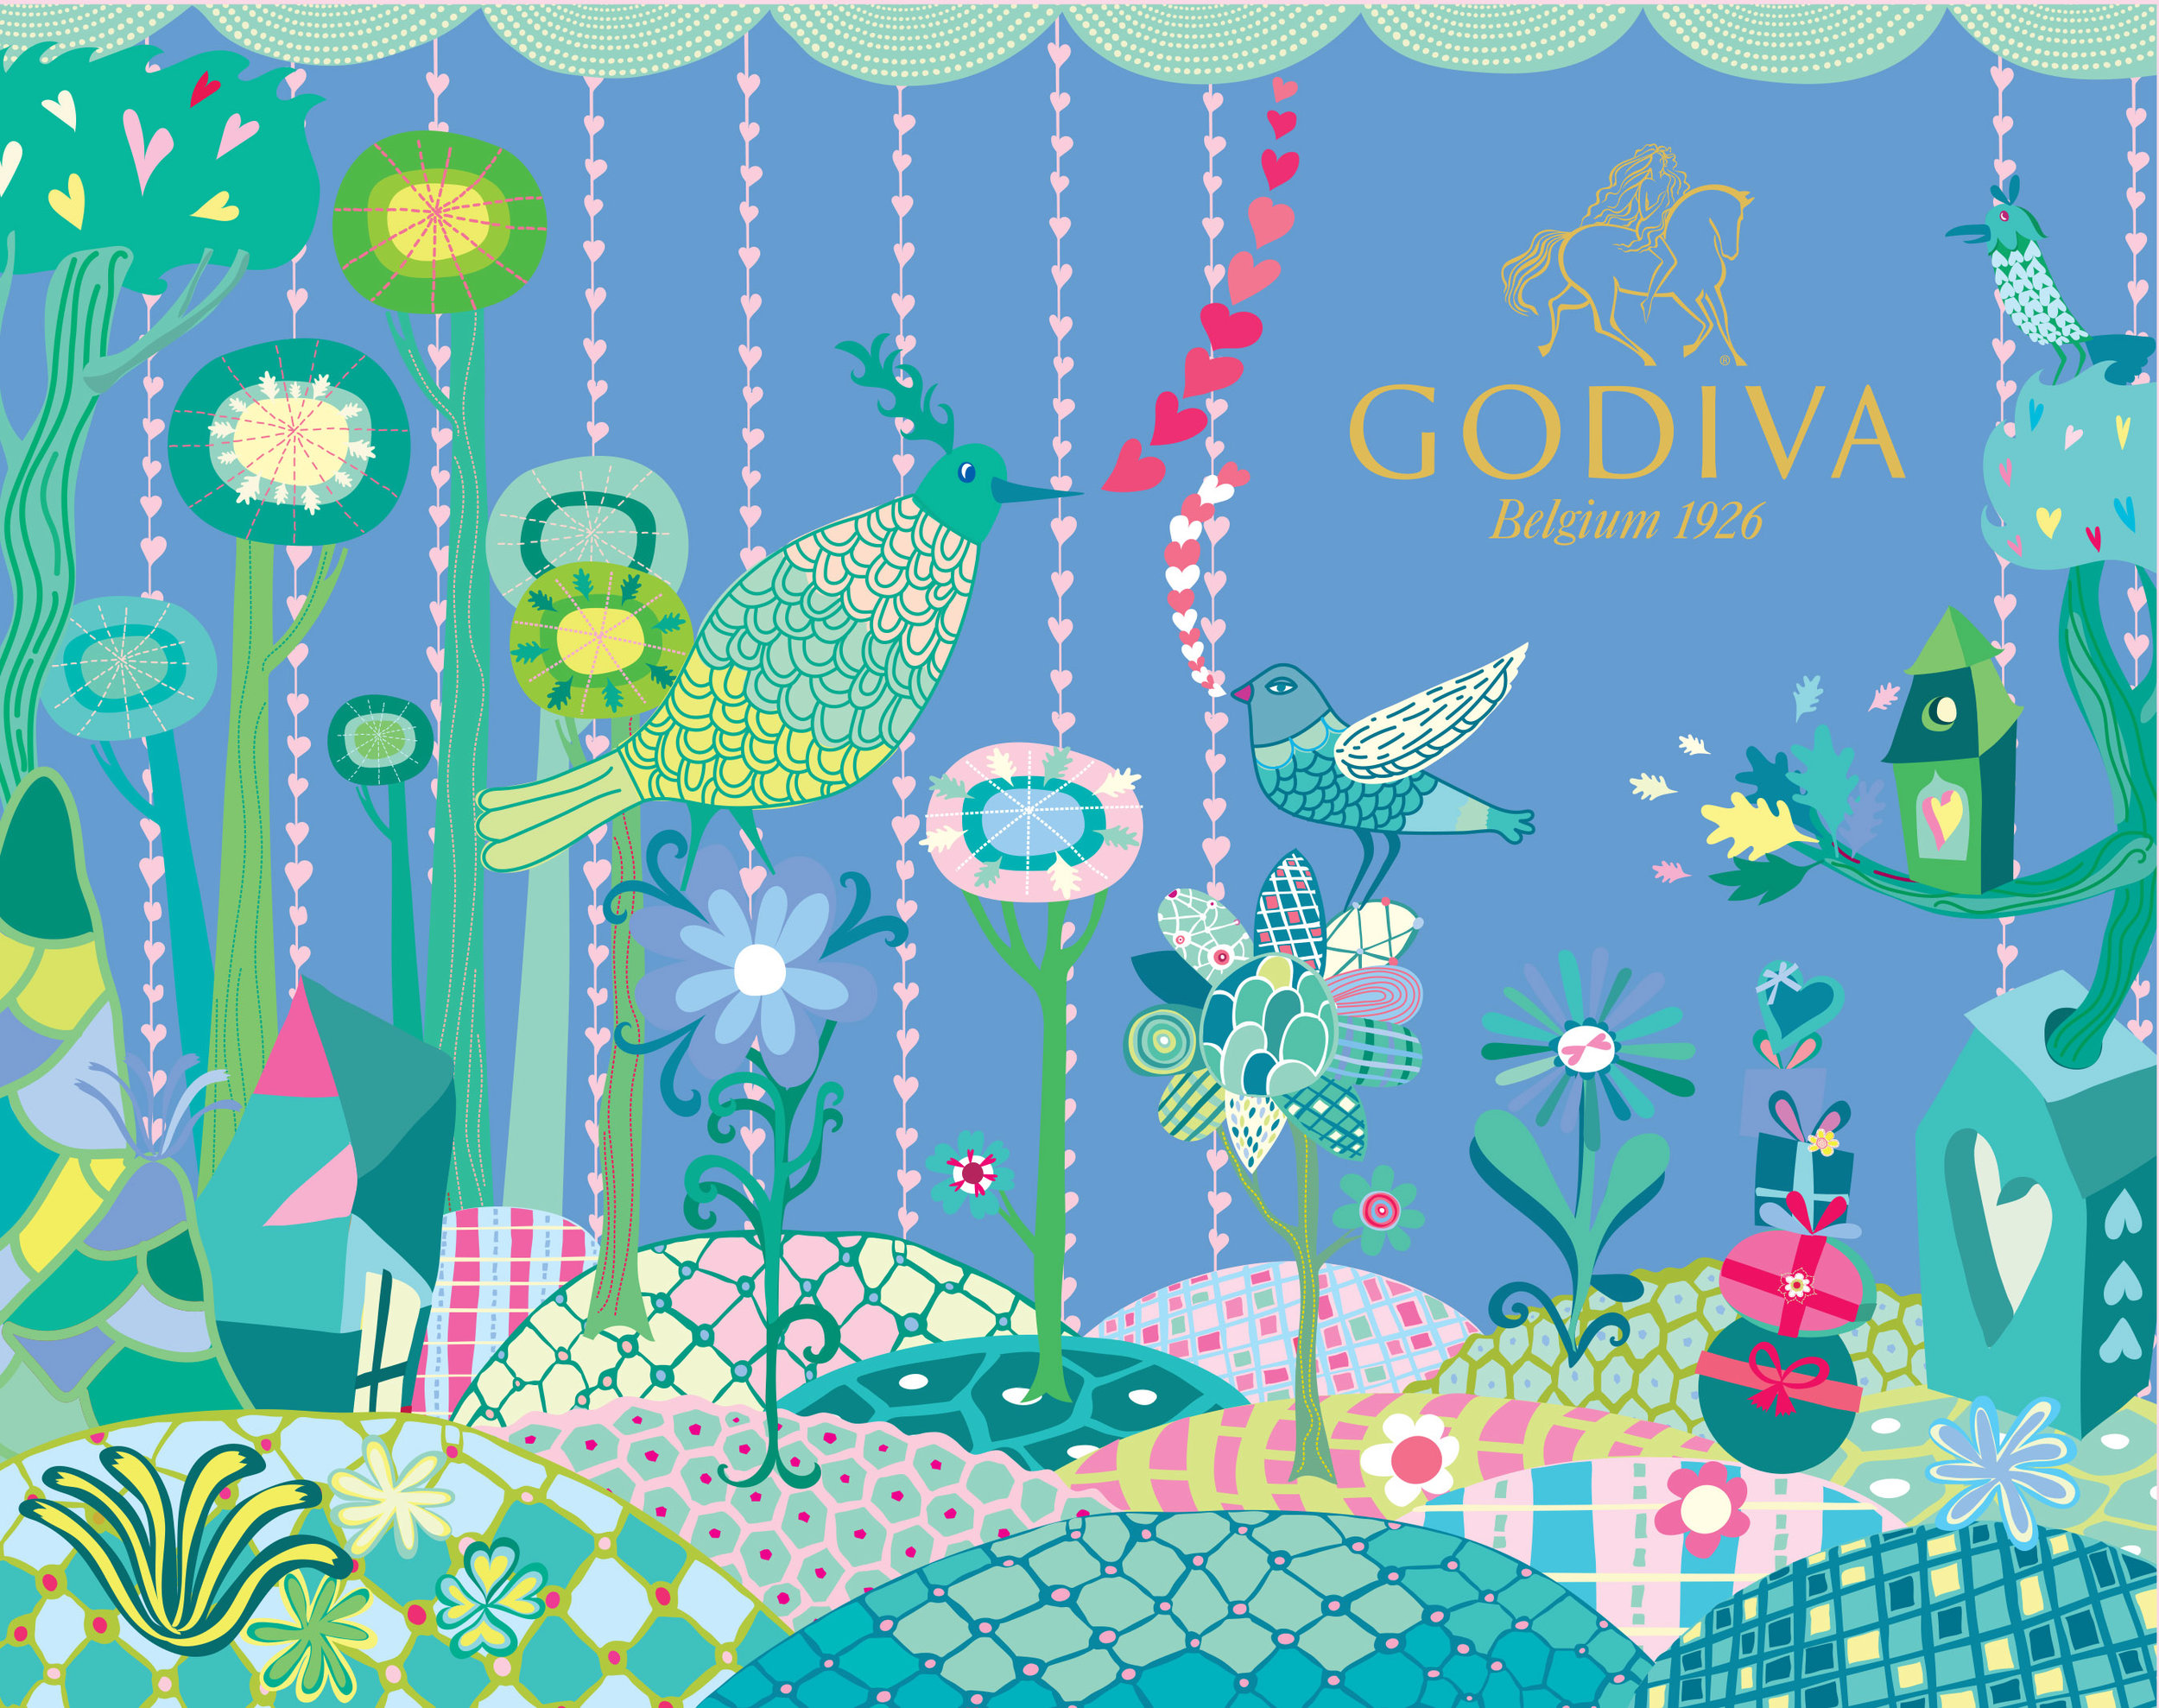 Godiva Chocolate White Day Packaging